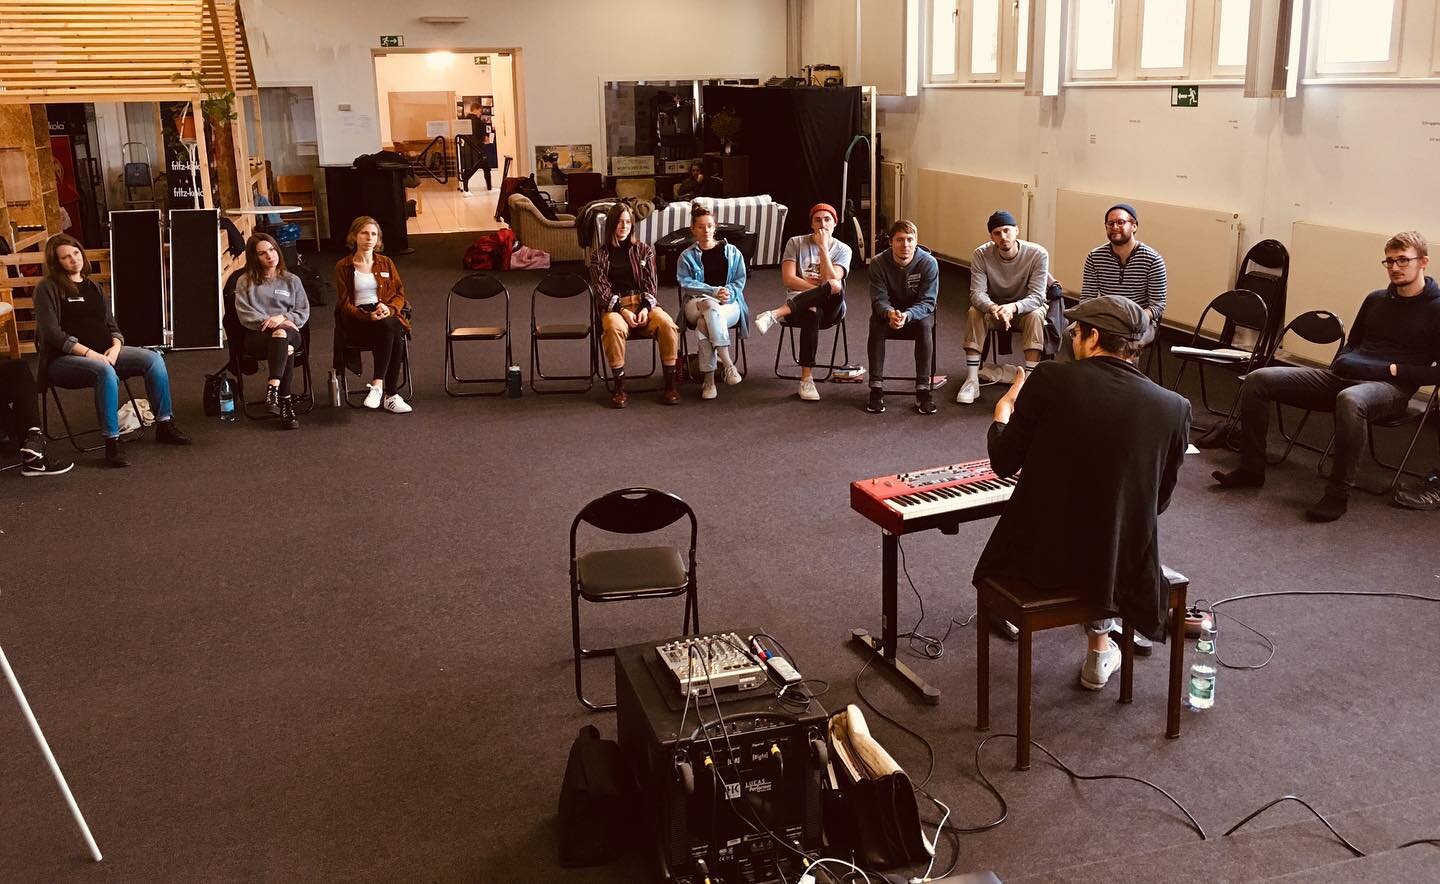 NoISE Academy war in Gie&szlig;en zum Workshop bei @mosaikkirchegie&szlig;en. Vielen Dank f&uuml;r die sehr gute und Produktive Zeit mit euch☺️ #noiseacademy #mosaikkirchegie&szlig;en #workshop #vocals #piano #guitar #gie&szlig;en #bandarbeit